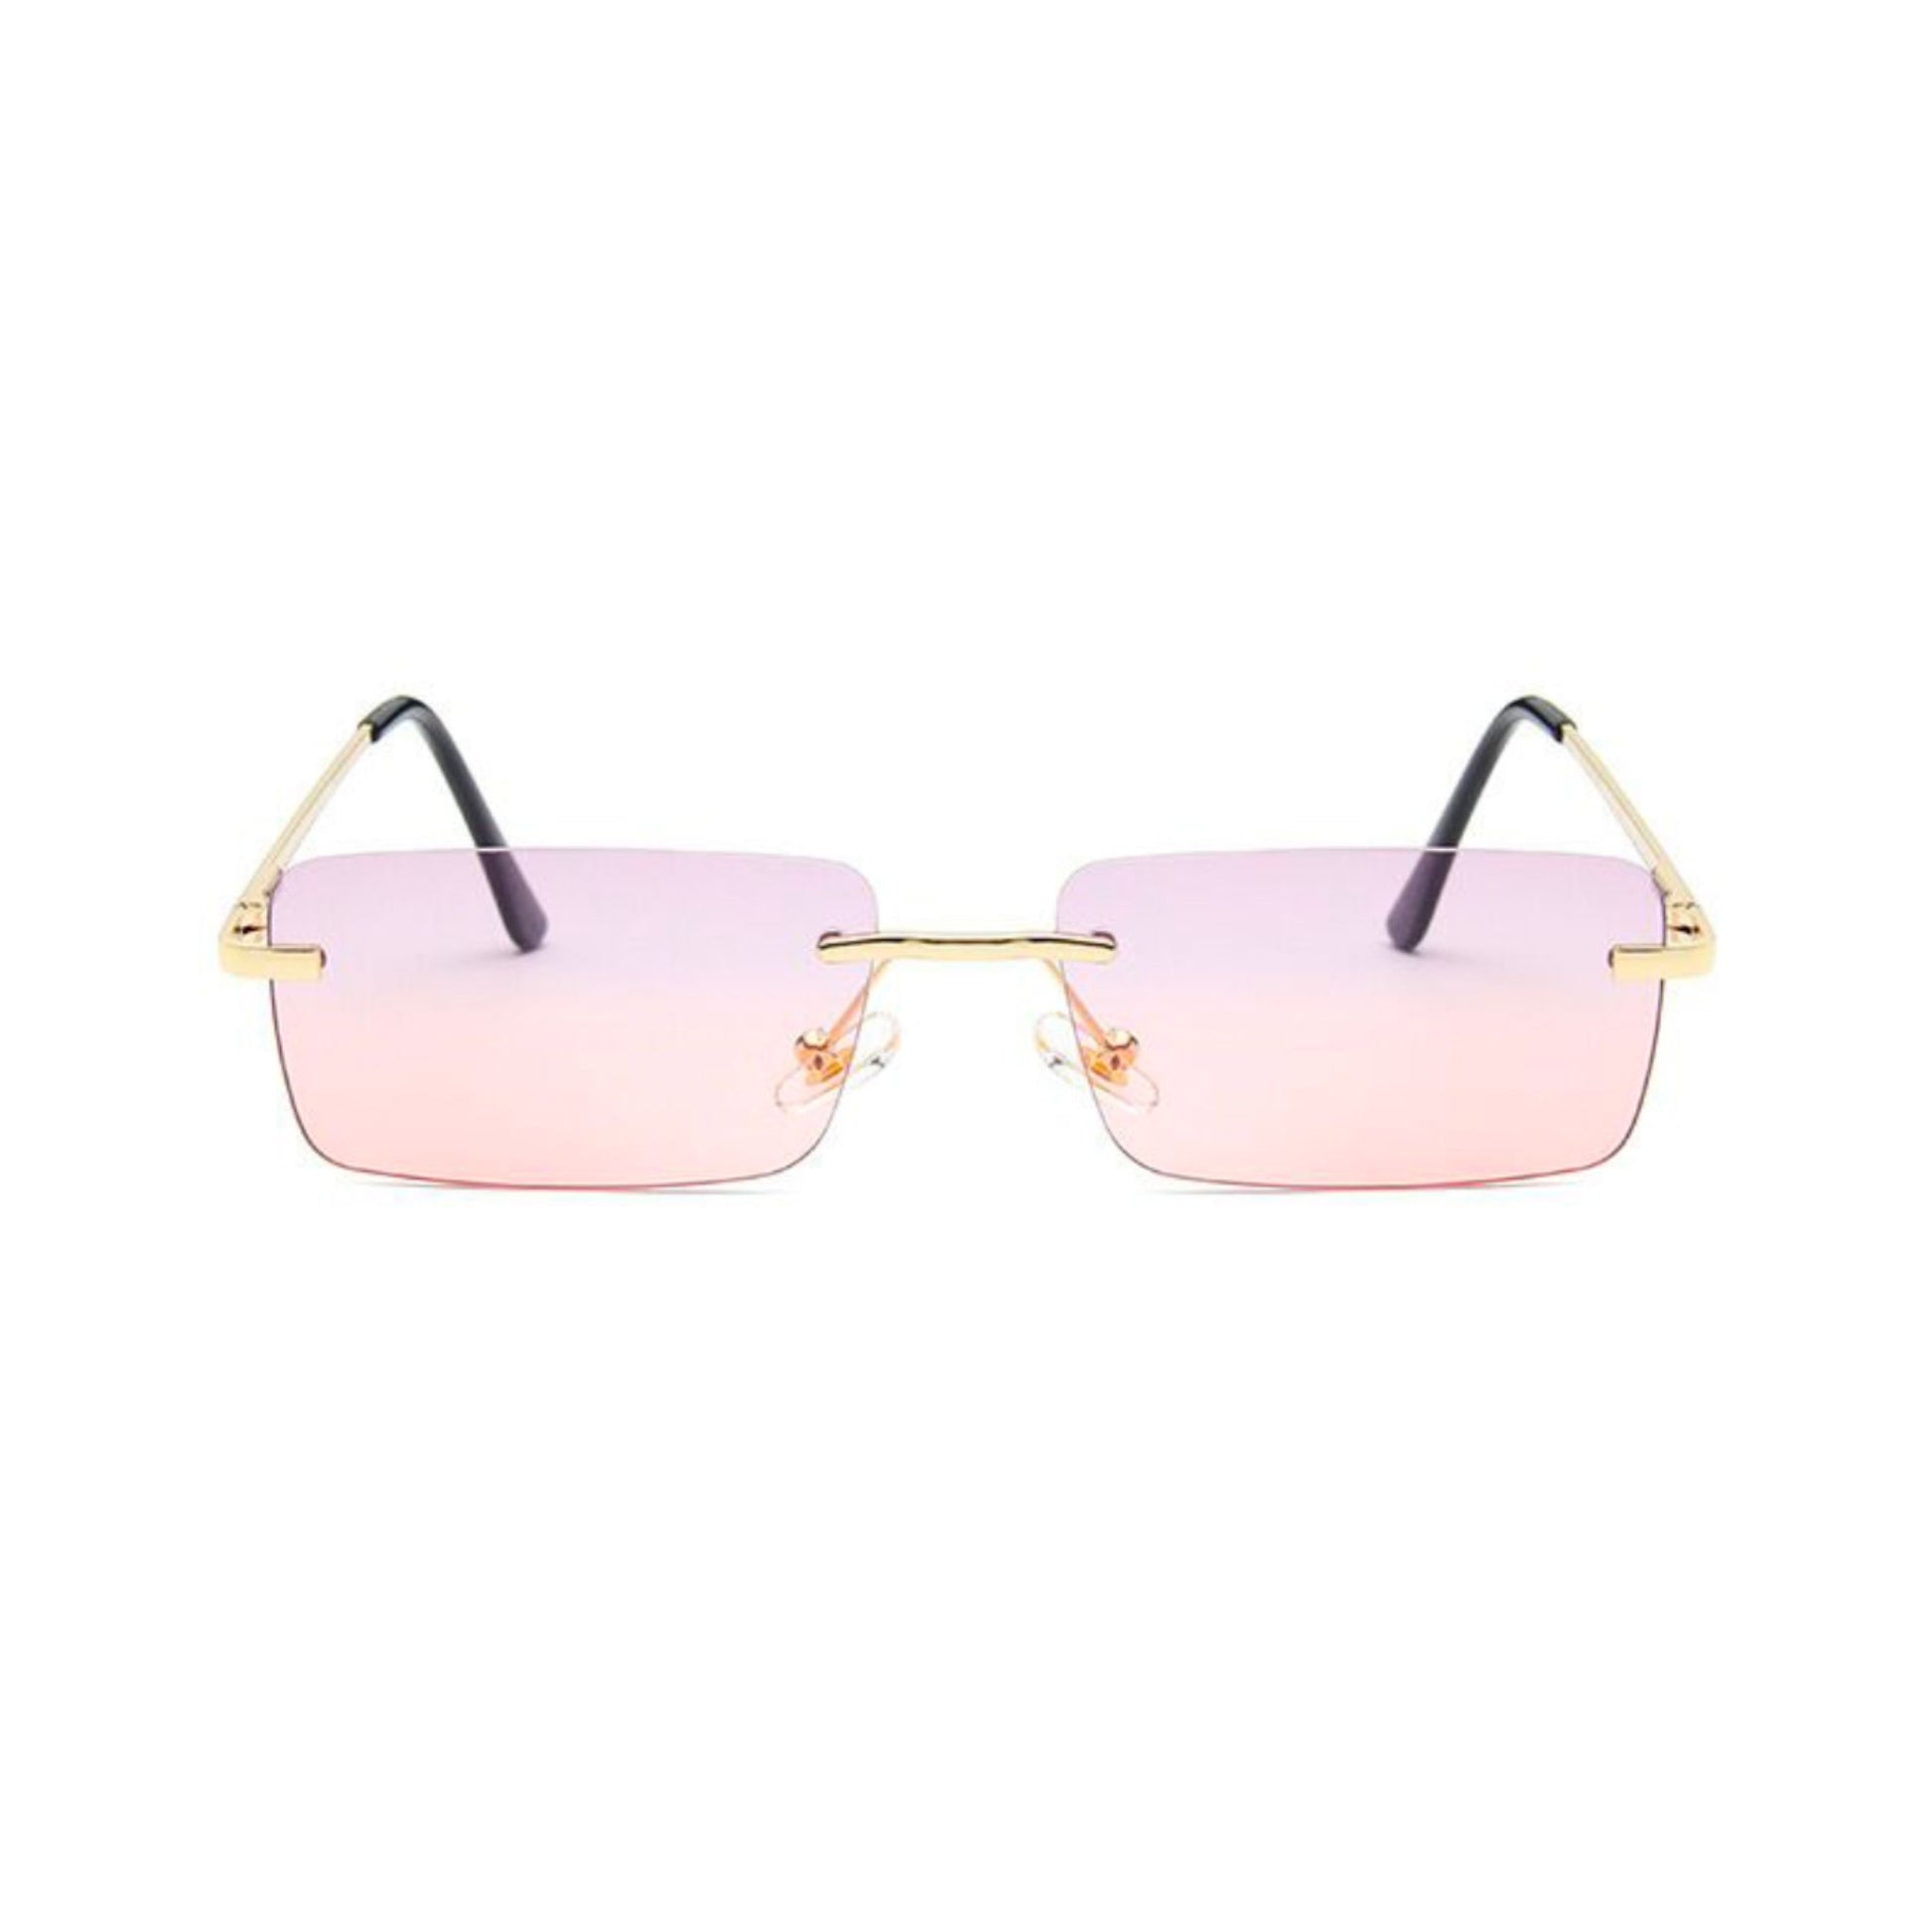 Ορθογώνια Γυαλιά Ηλίου Tez της Exposure Sunglasses με προστασία UV400 σε χρυσό χρώμα σκελετού και ροζ φακό.